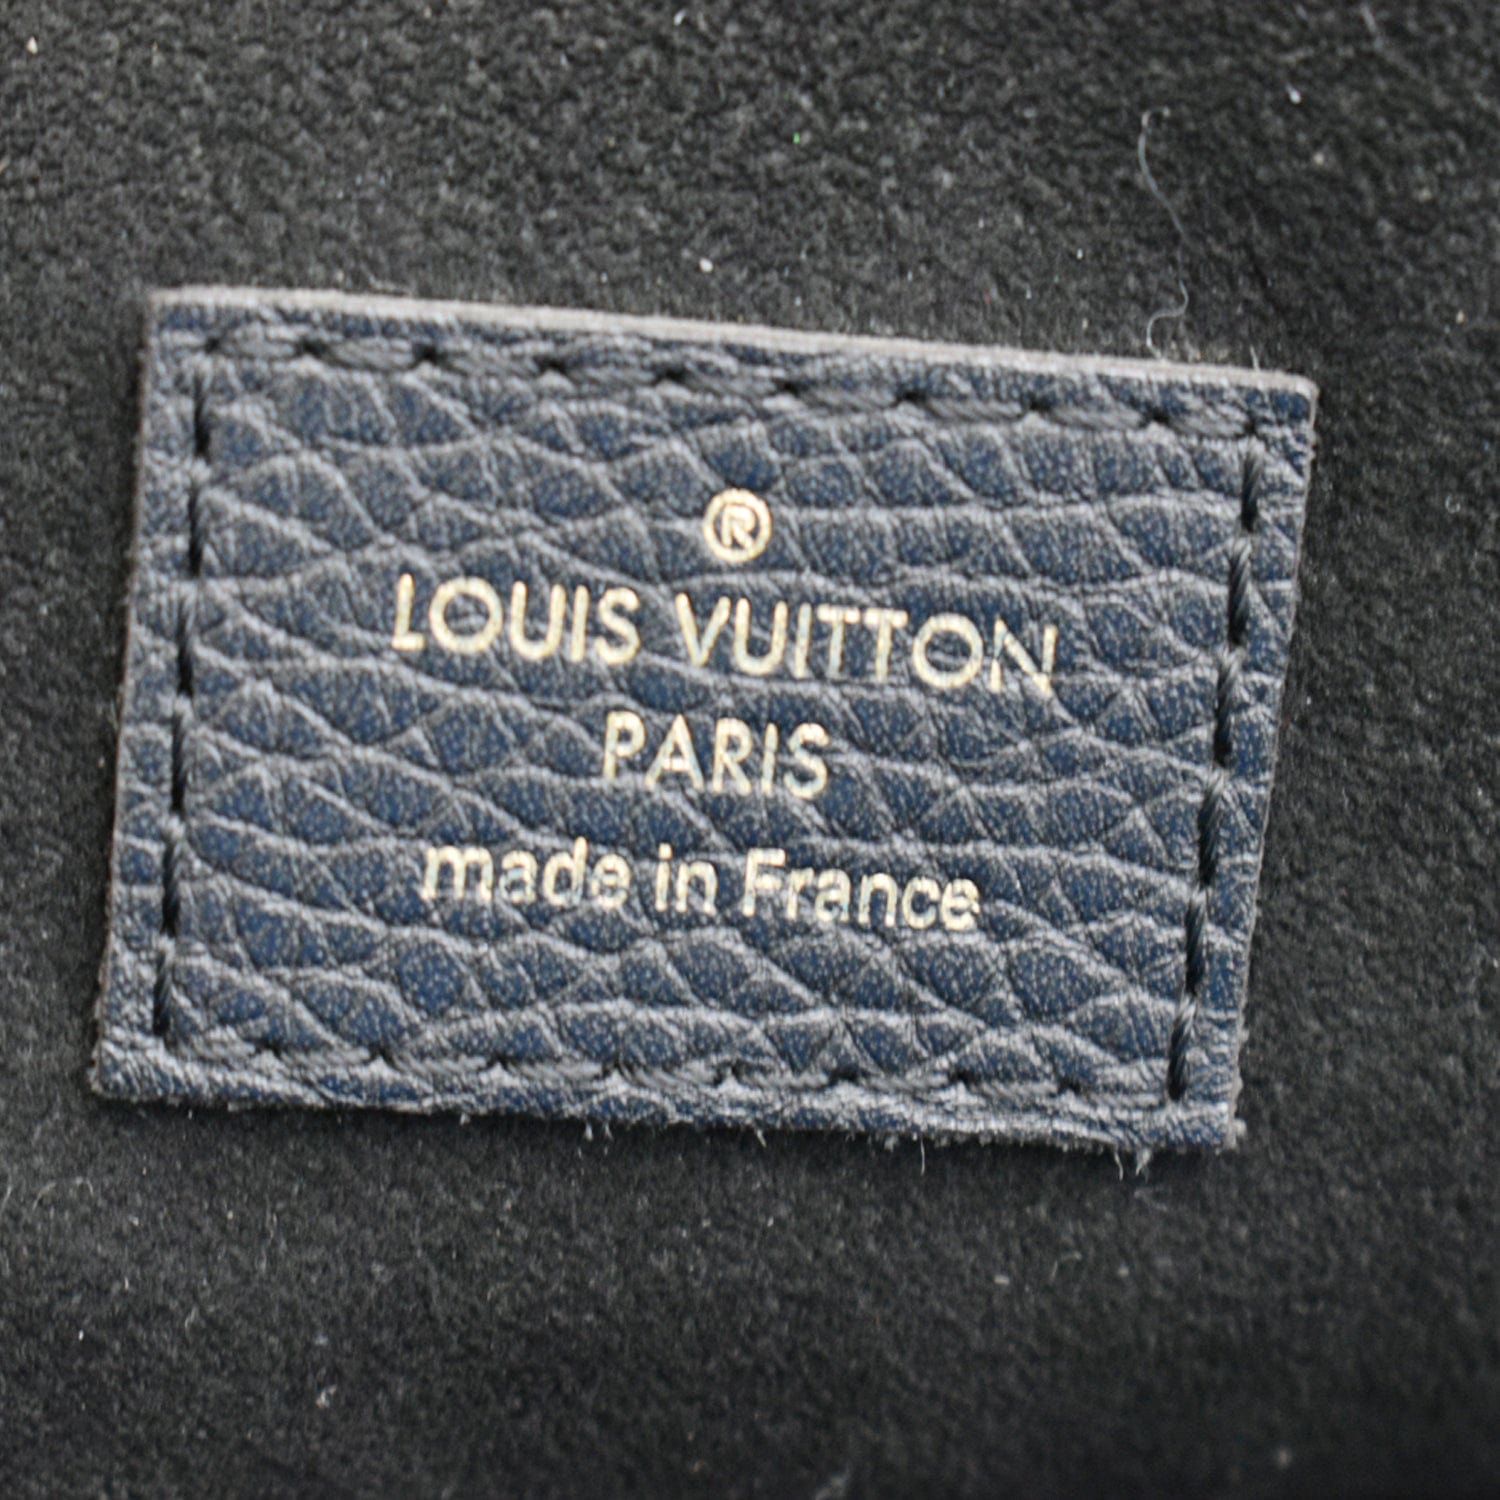 Louis Vuitton Retiro NM Noir Brand New Never Carried